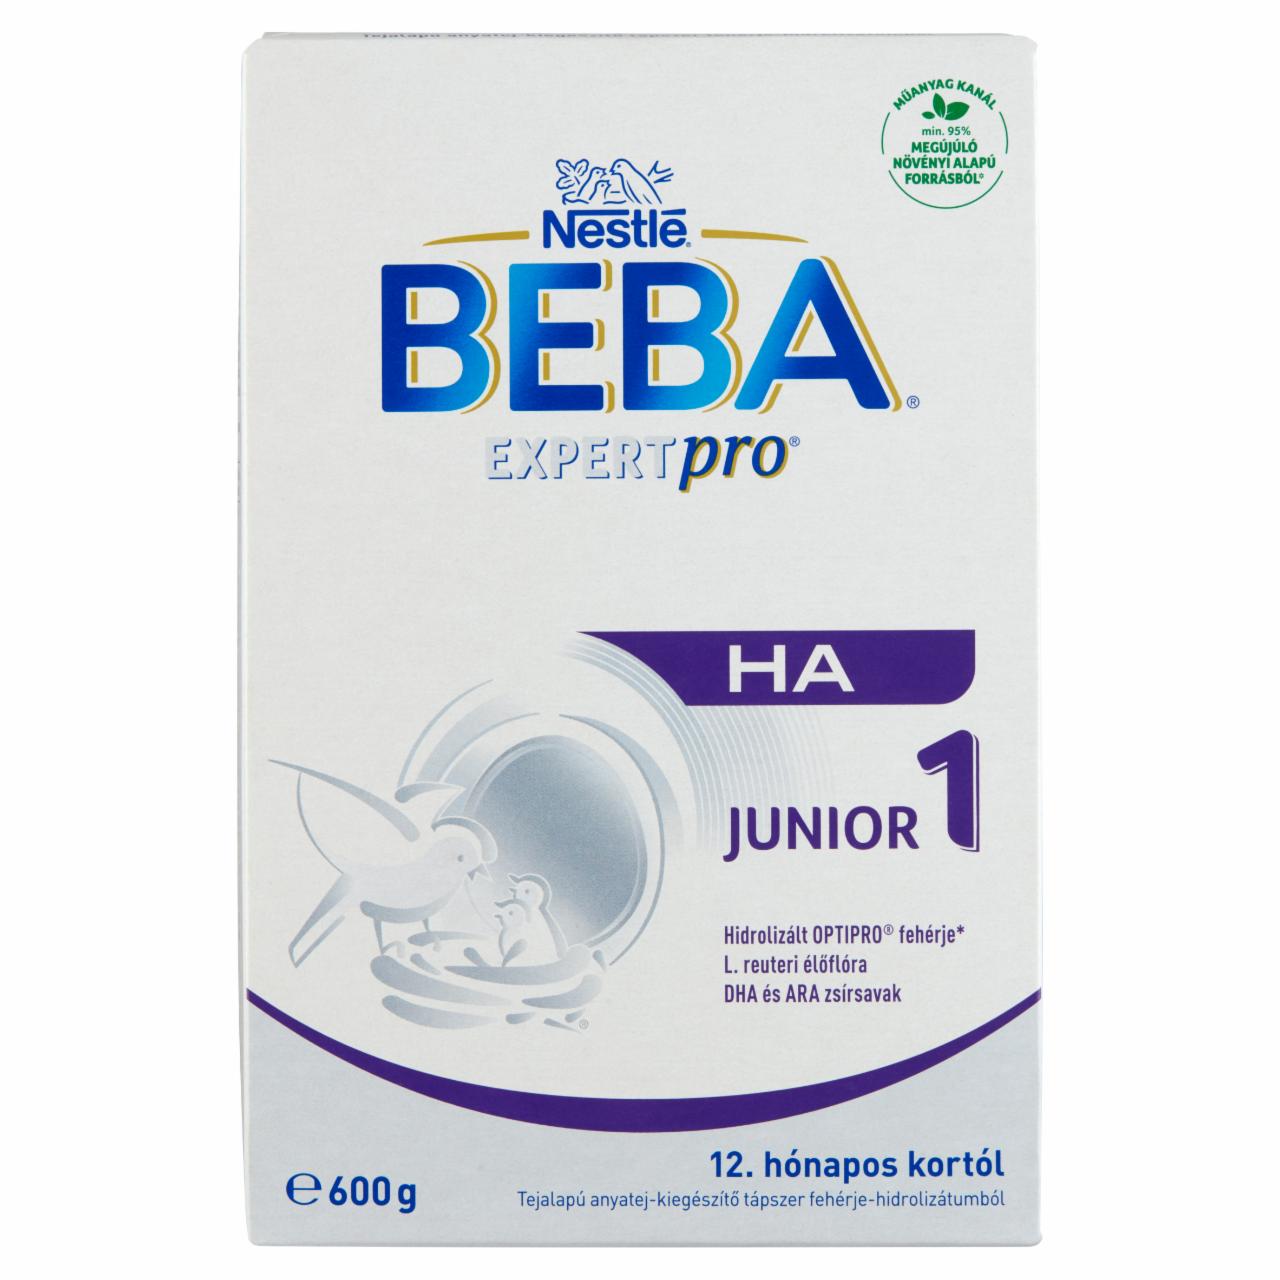 Képek - Beba ExpertPro HA Junior 1 tejalapú anyatej-kiegészítő tápszer 12. hónapos kortól 2 x 300 g (600 g)